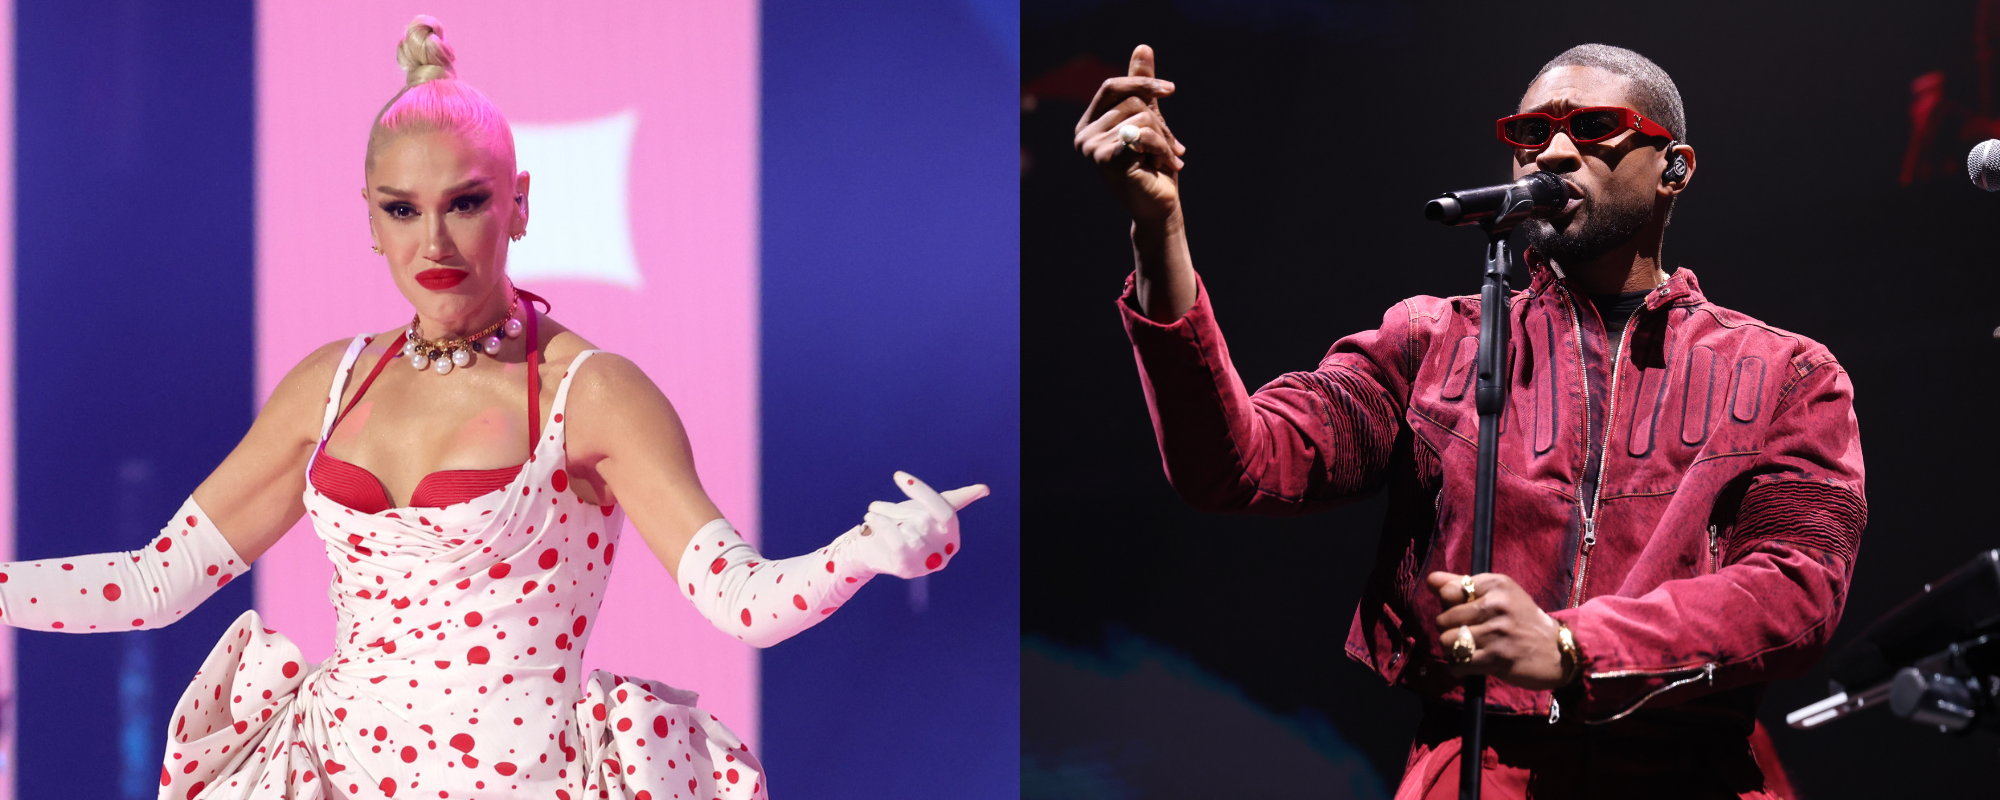 Gwen Stefani Announces Live Super Bowl Performance; Usher Drops Star-Studded Halftime Show Teaser